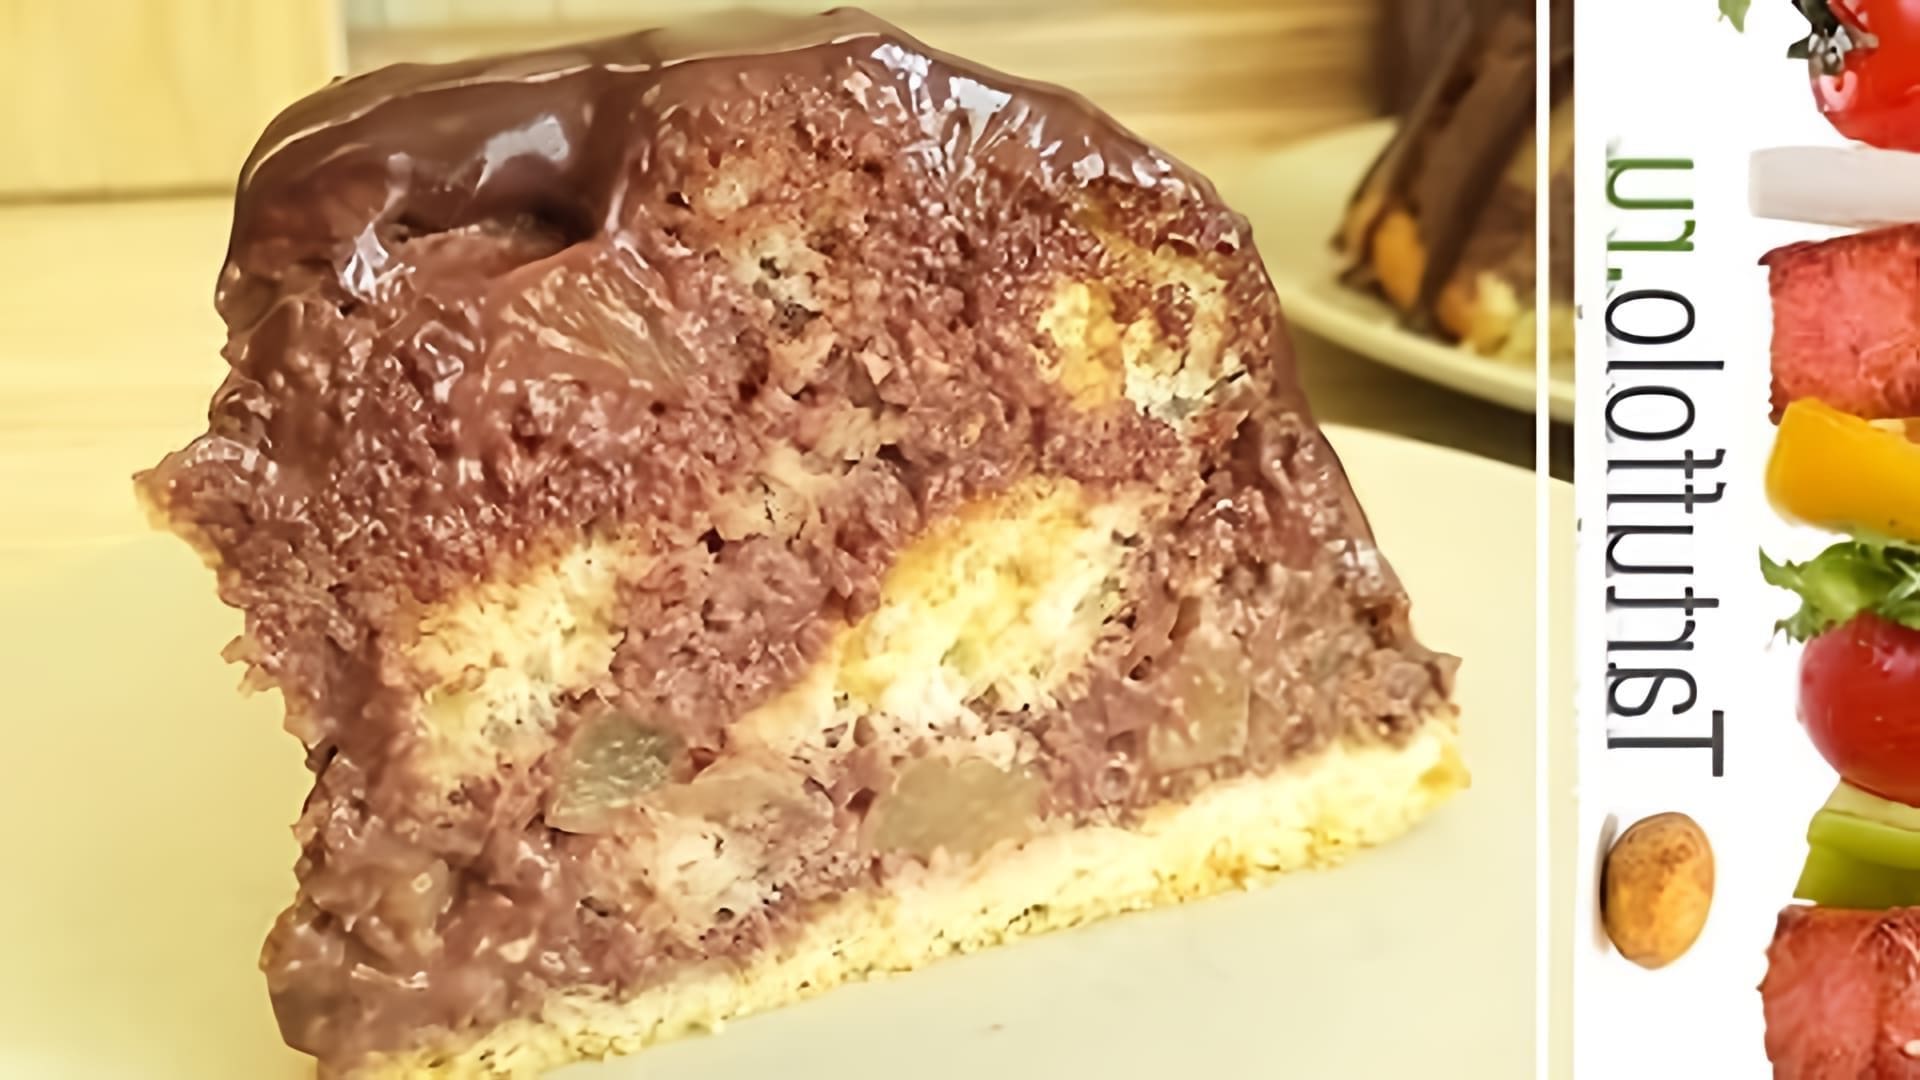 В этом видео демонстрируется процесс приготовления домашнего торта Панчо с легким шоколадным кремом